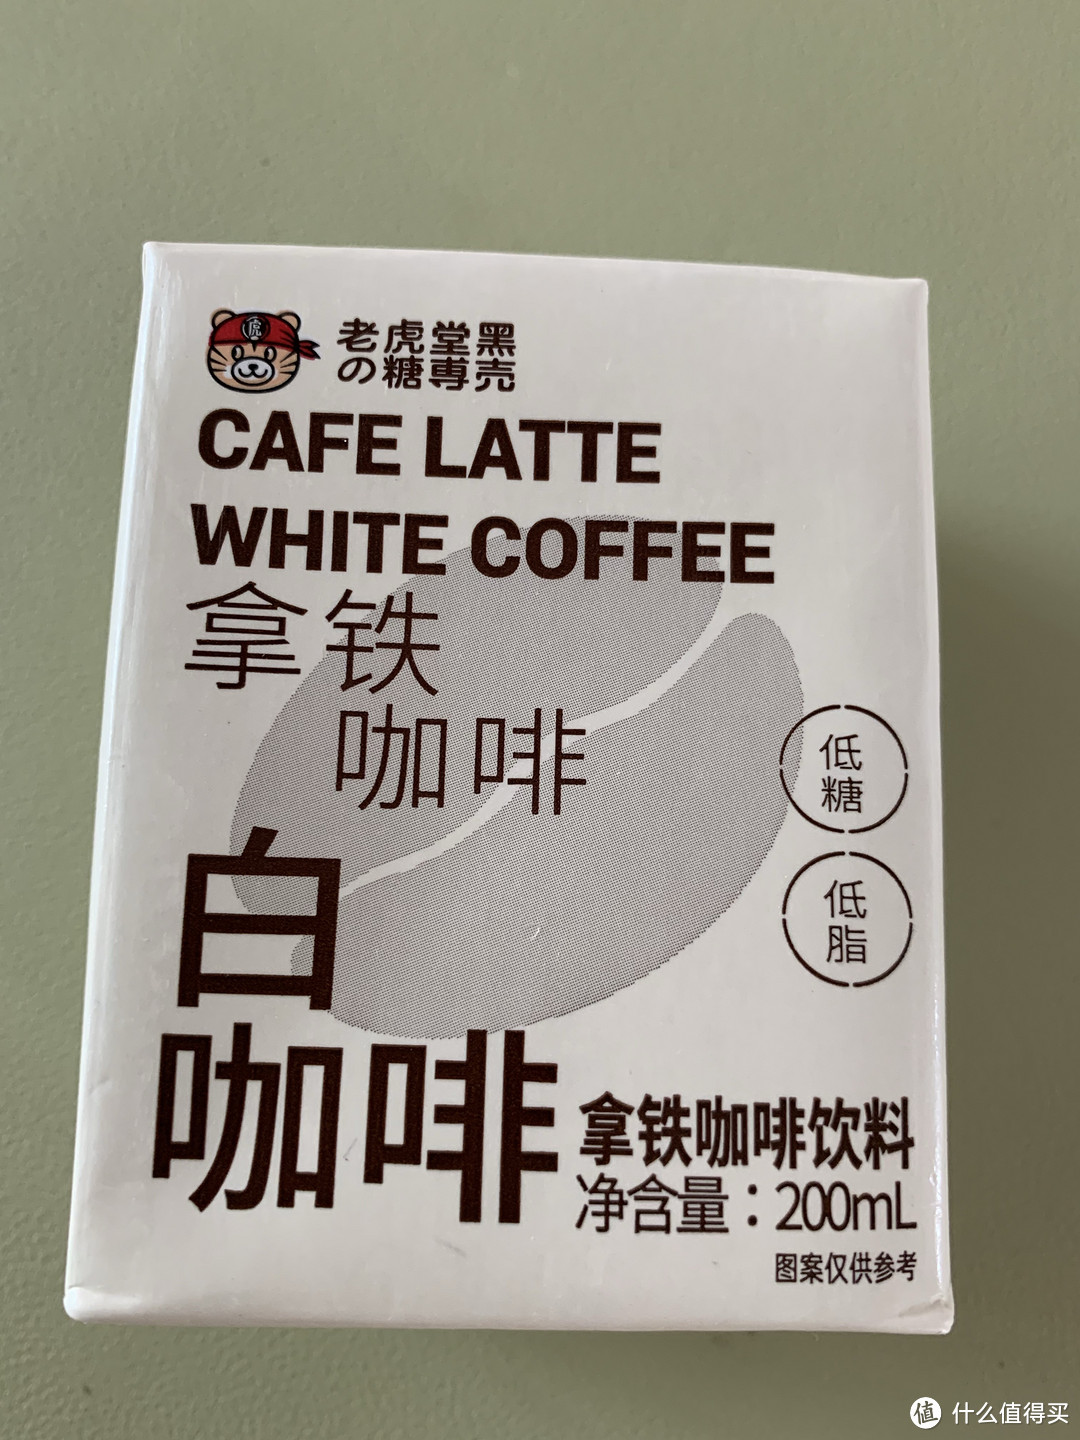 0糖0脂方便携带的白咖啡饮料